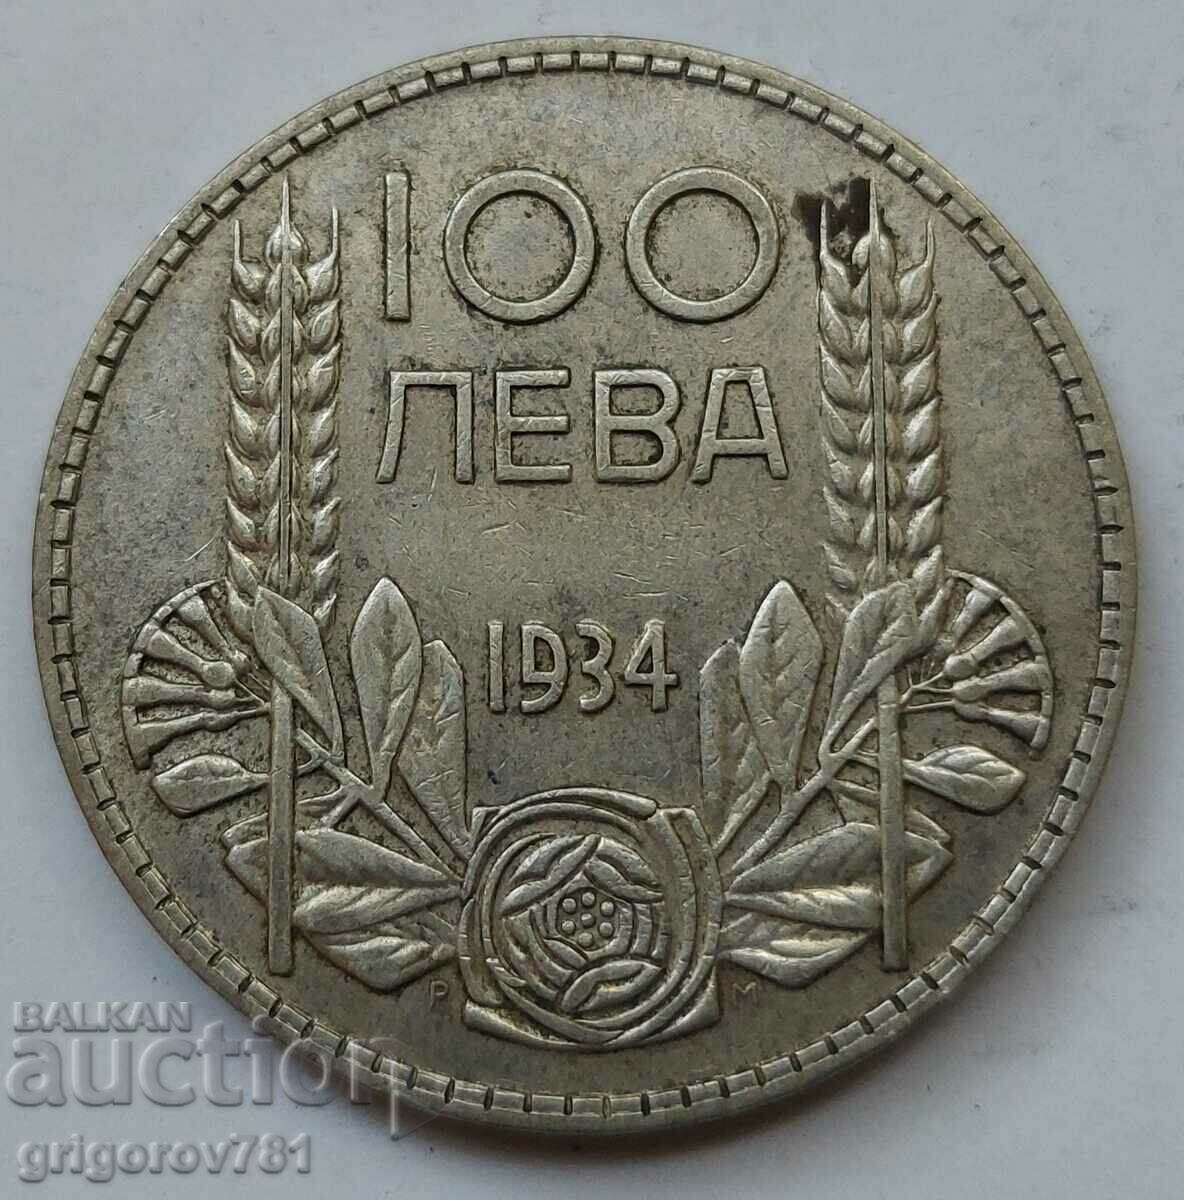 100 leva argint Bulgaria 1934 - monedă de argint #107